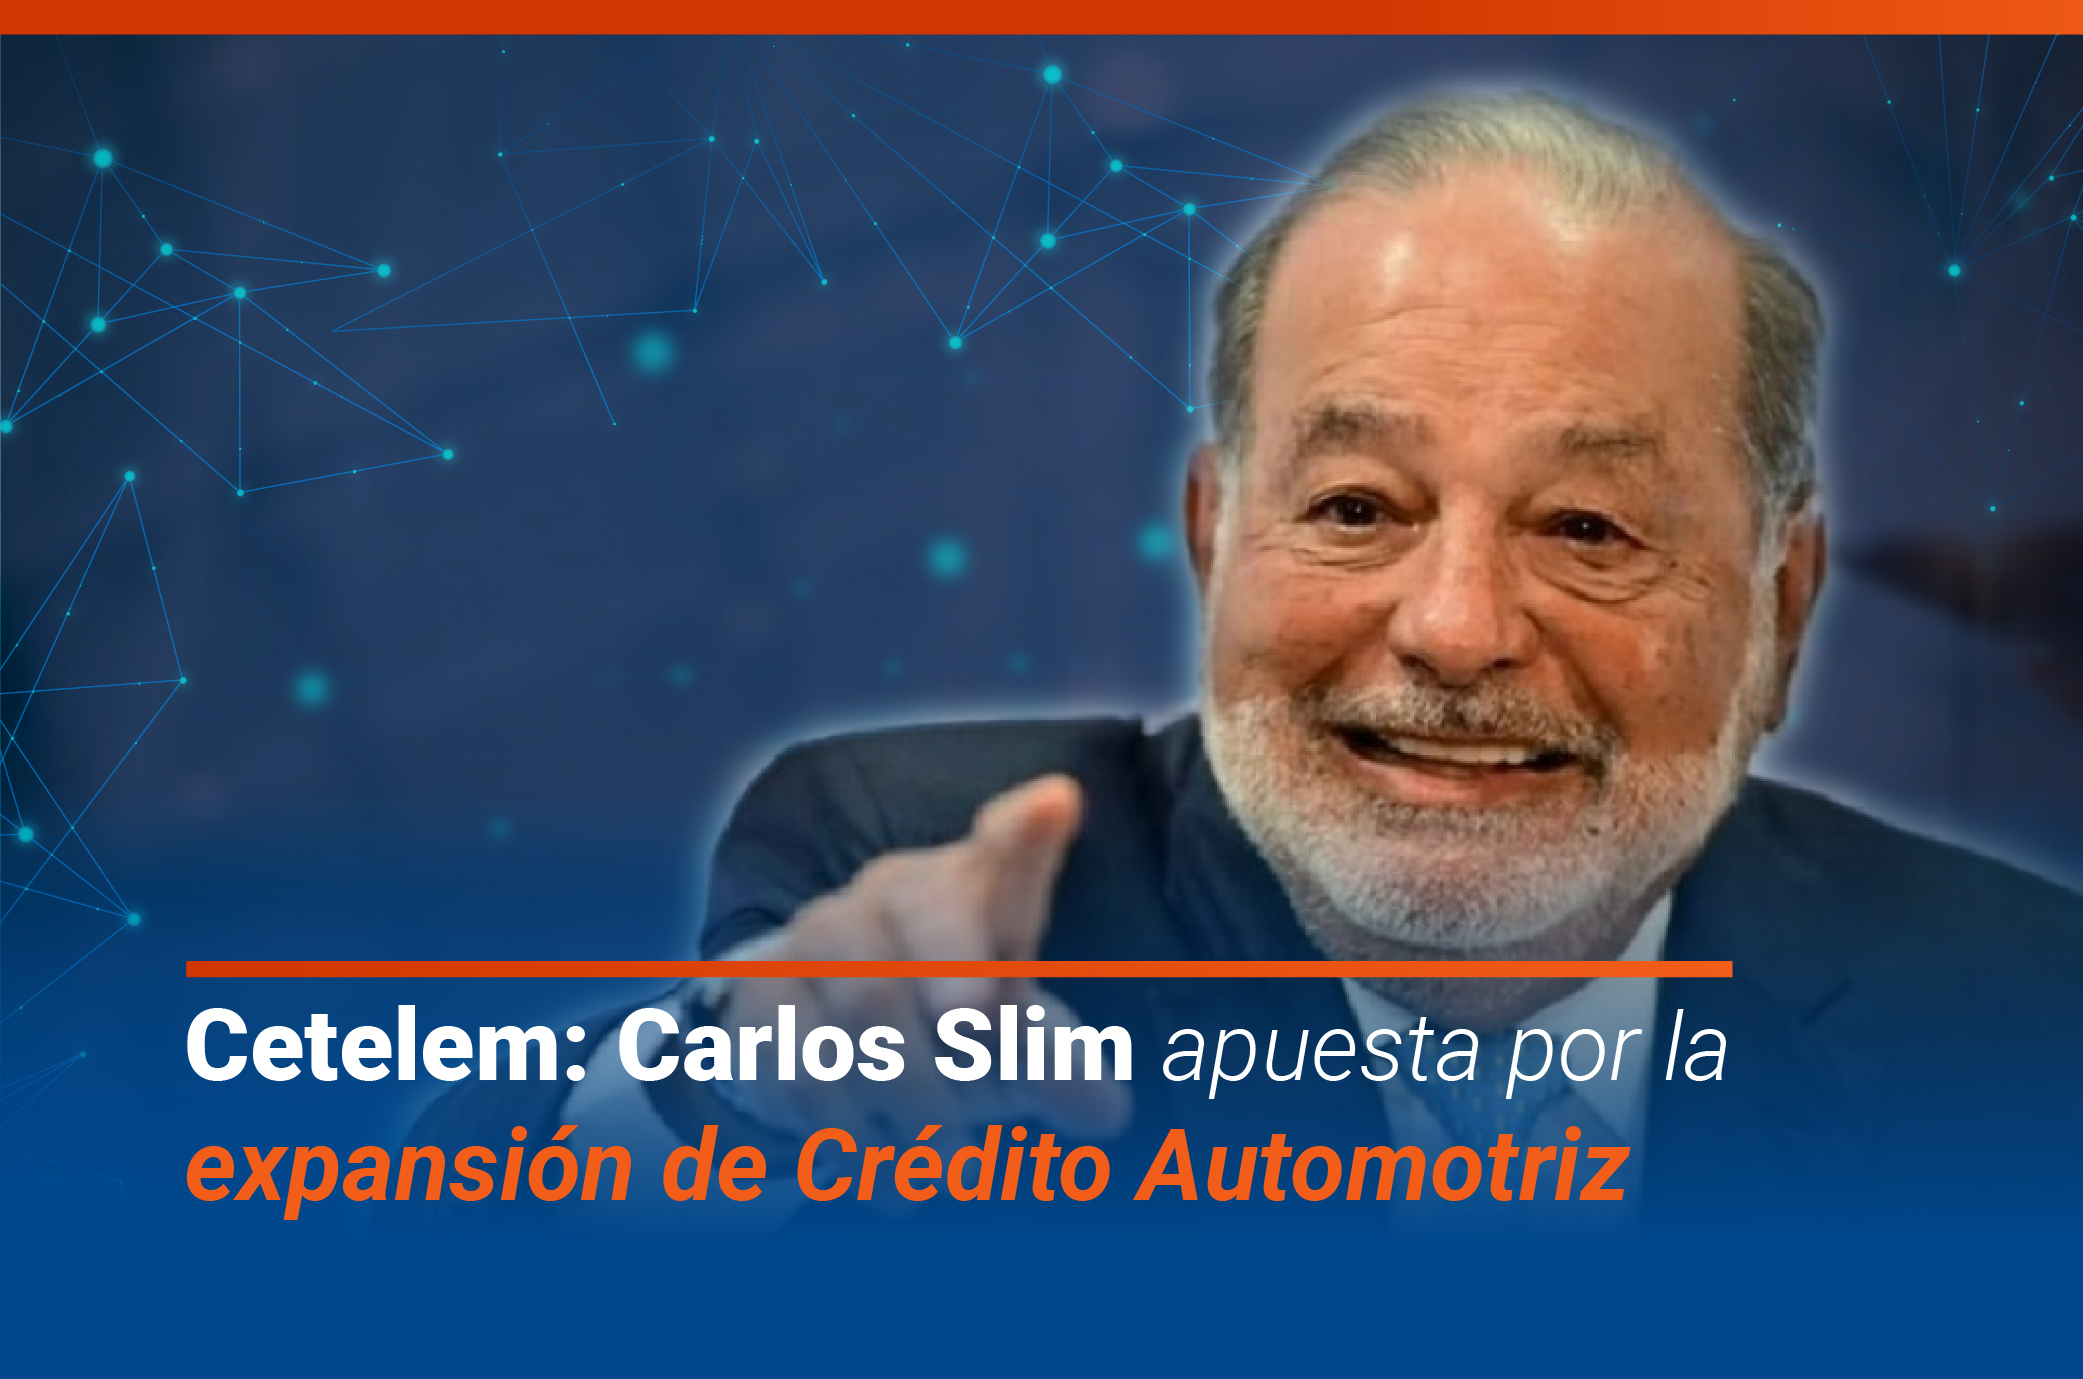 SOFOM CETELEM: Carlos Slim apuesta por la expansión de crédito automotriz